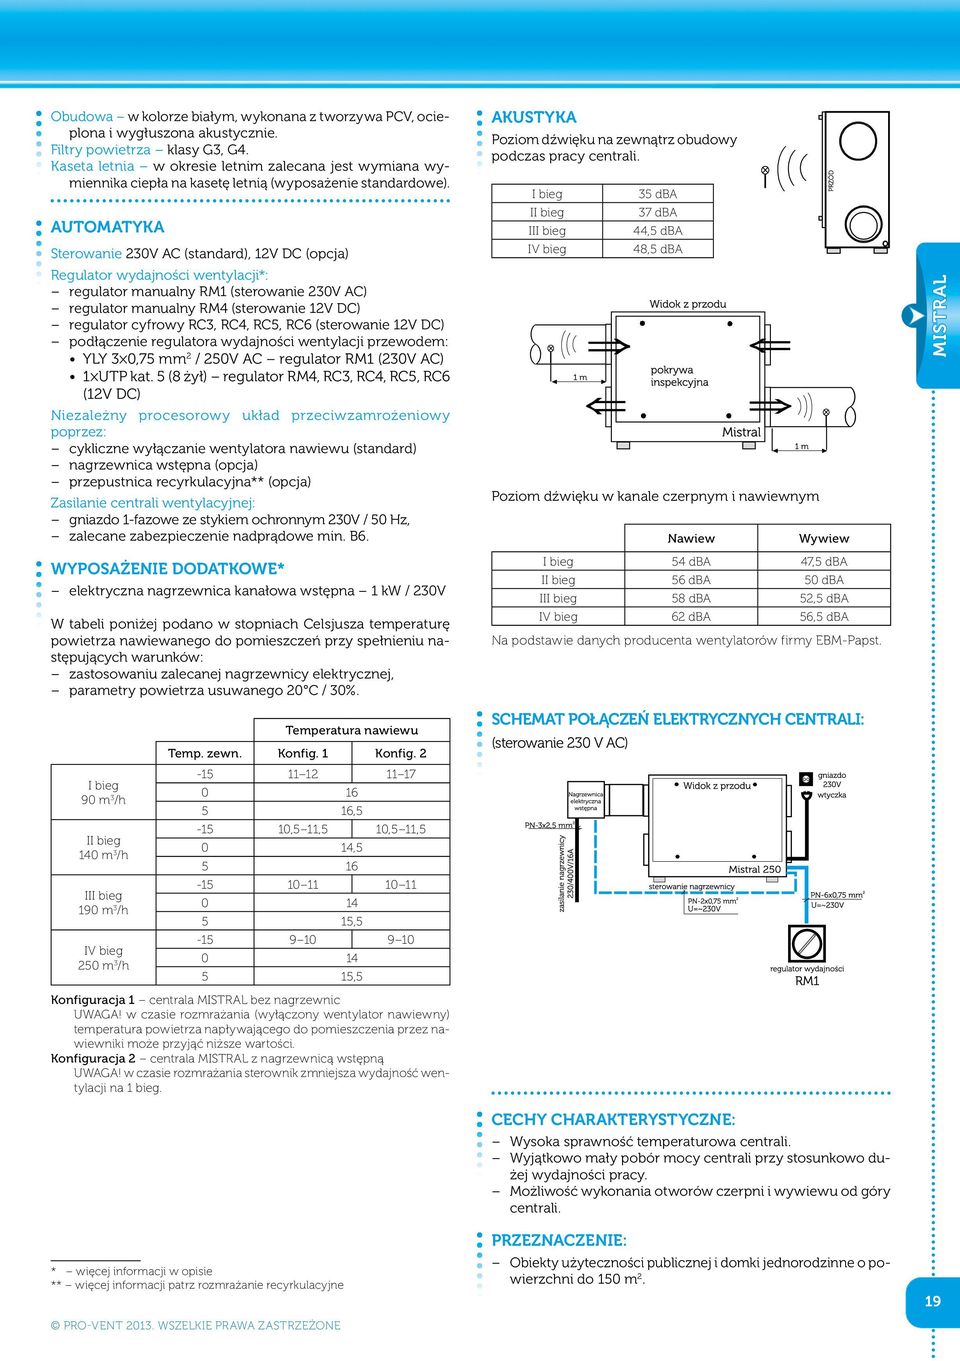 AUTOMATYKA Sterowanie 230V AC (standard), 12V DC (opcja) Regulator wydajności wentylacji*: regulator manualny RM1 (sterowanie 230V AC) regulator manualny RM4 (sterowanie 12V DC) regulator cyfrowy